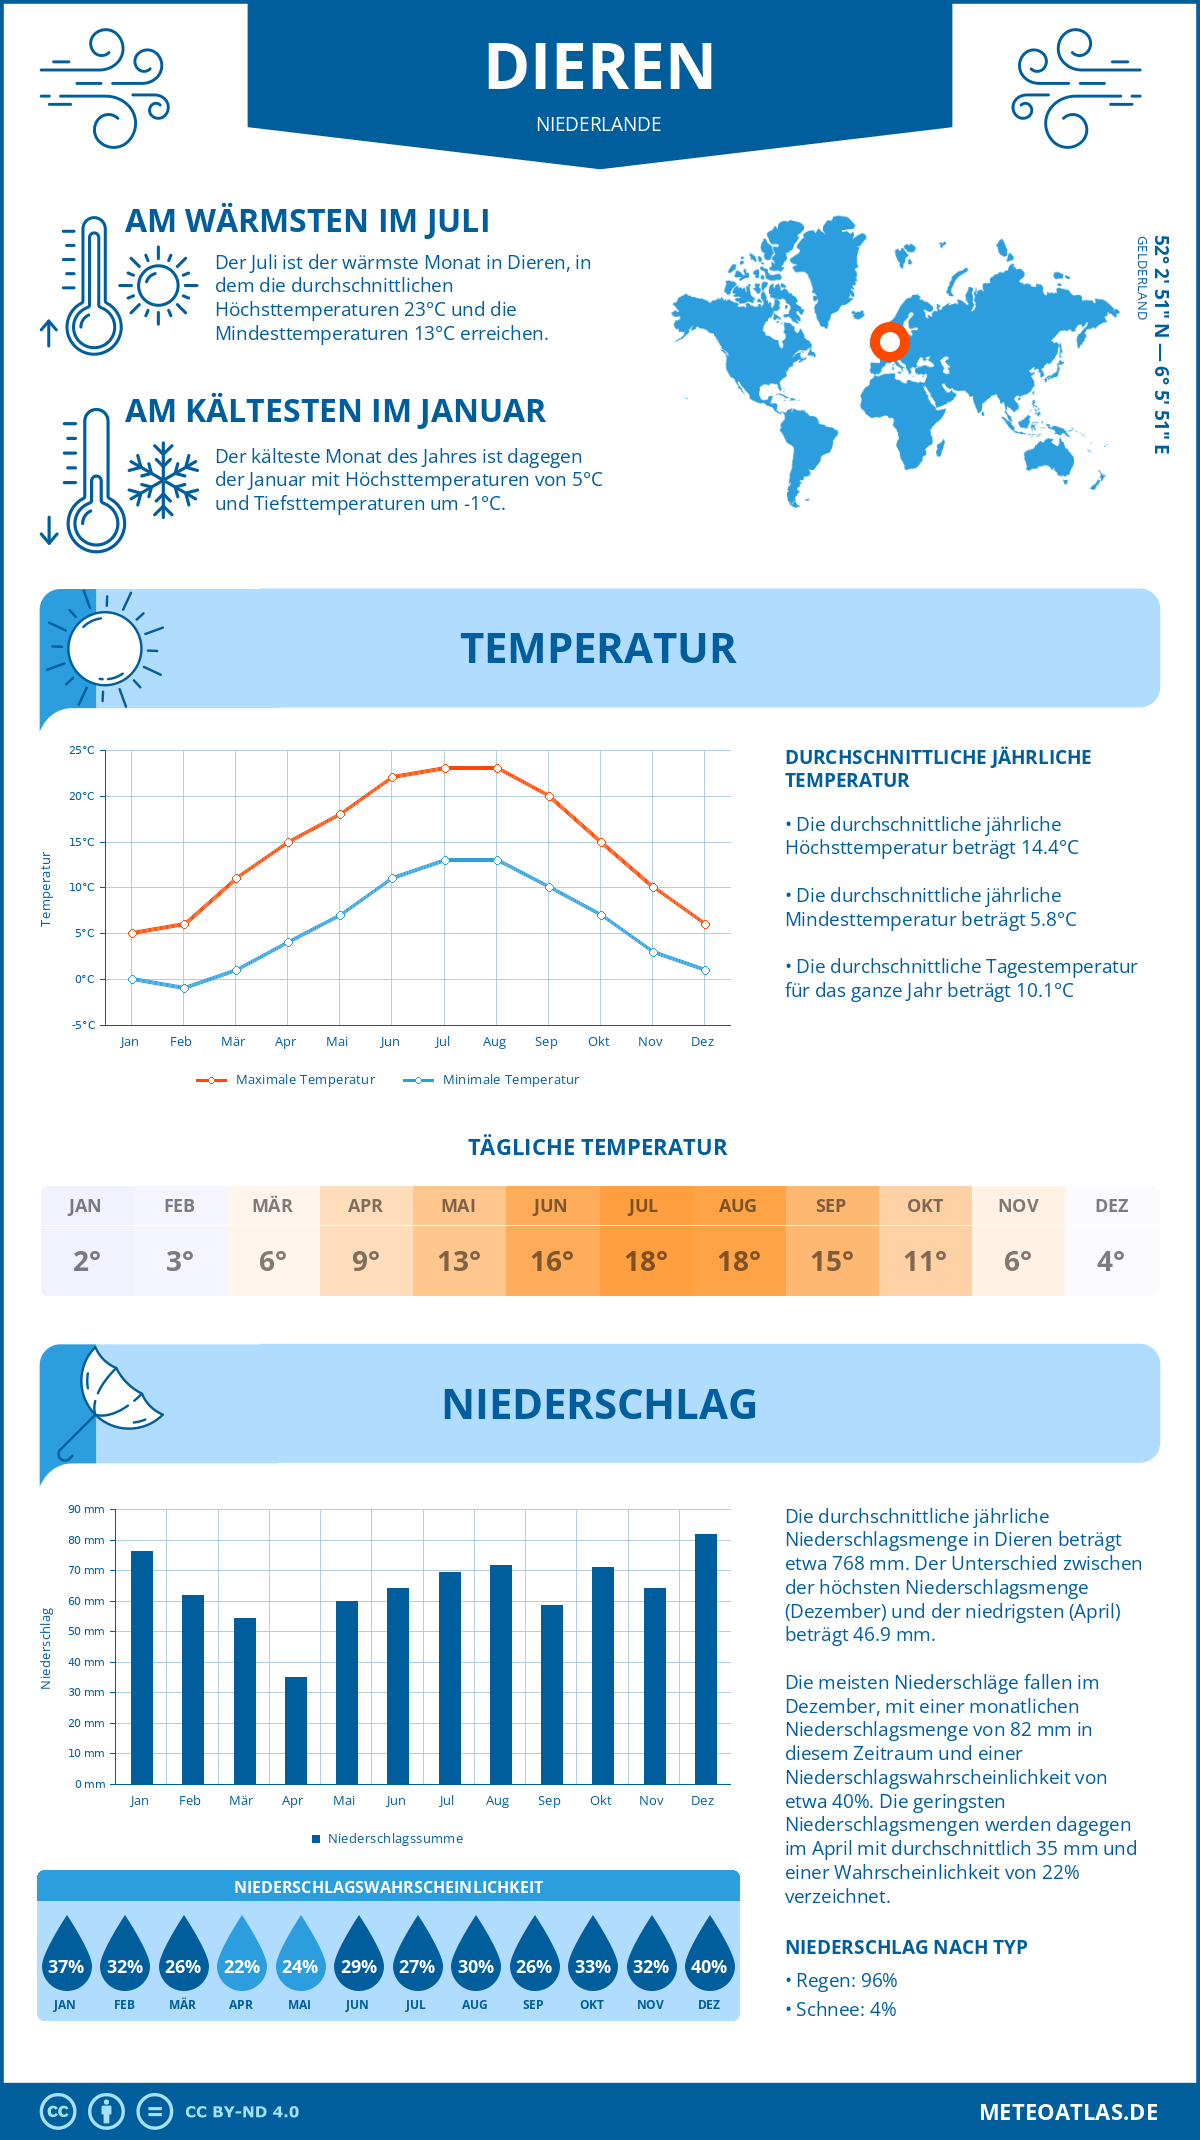 Wetter Dieren (Niederlande) - Temperatur und Niederschlag